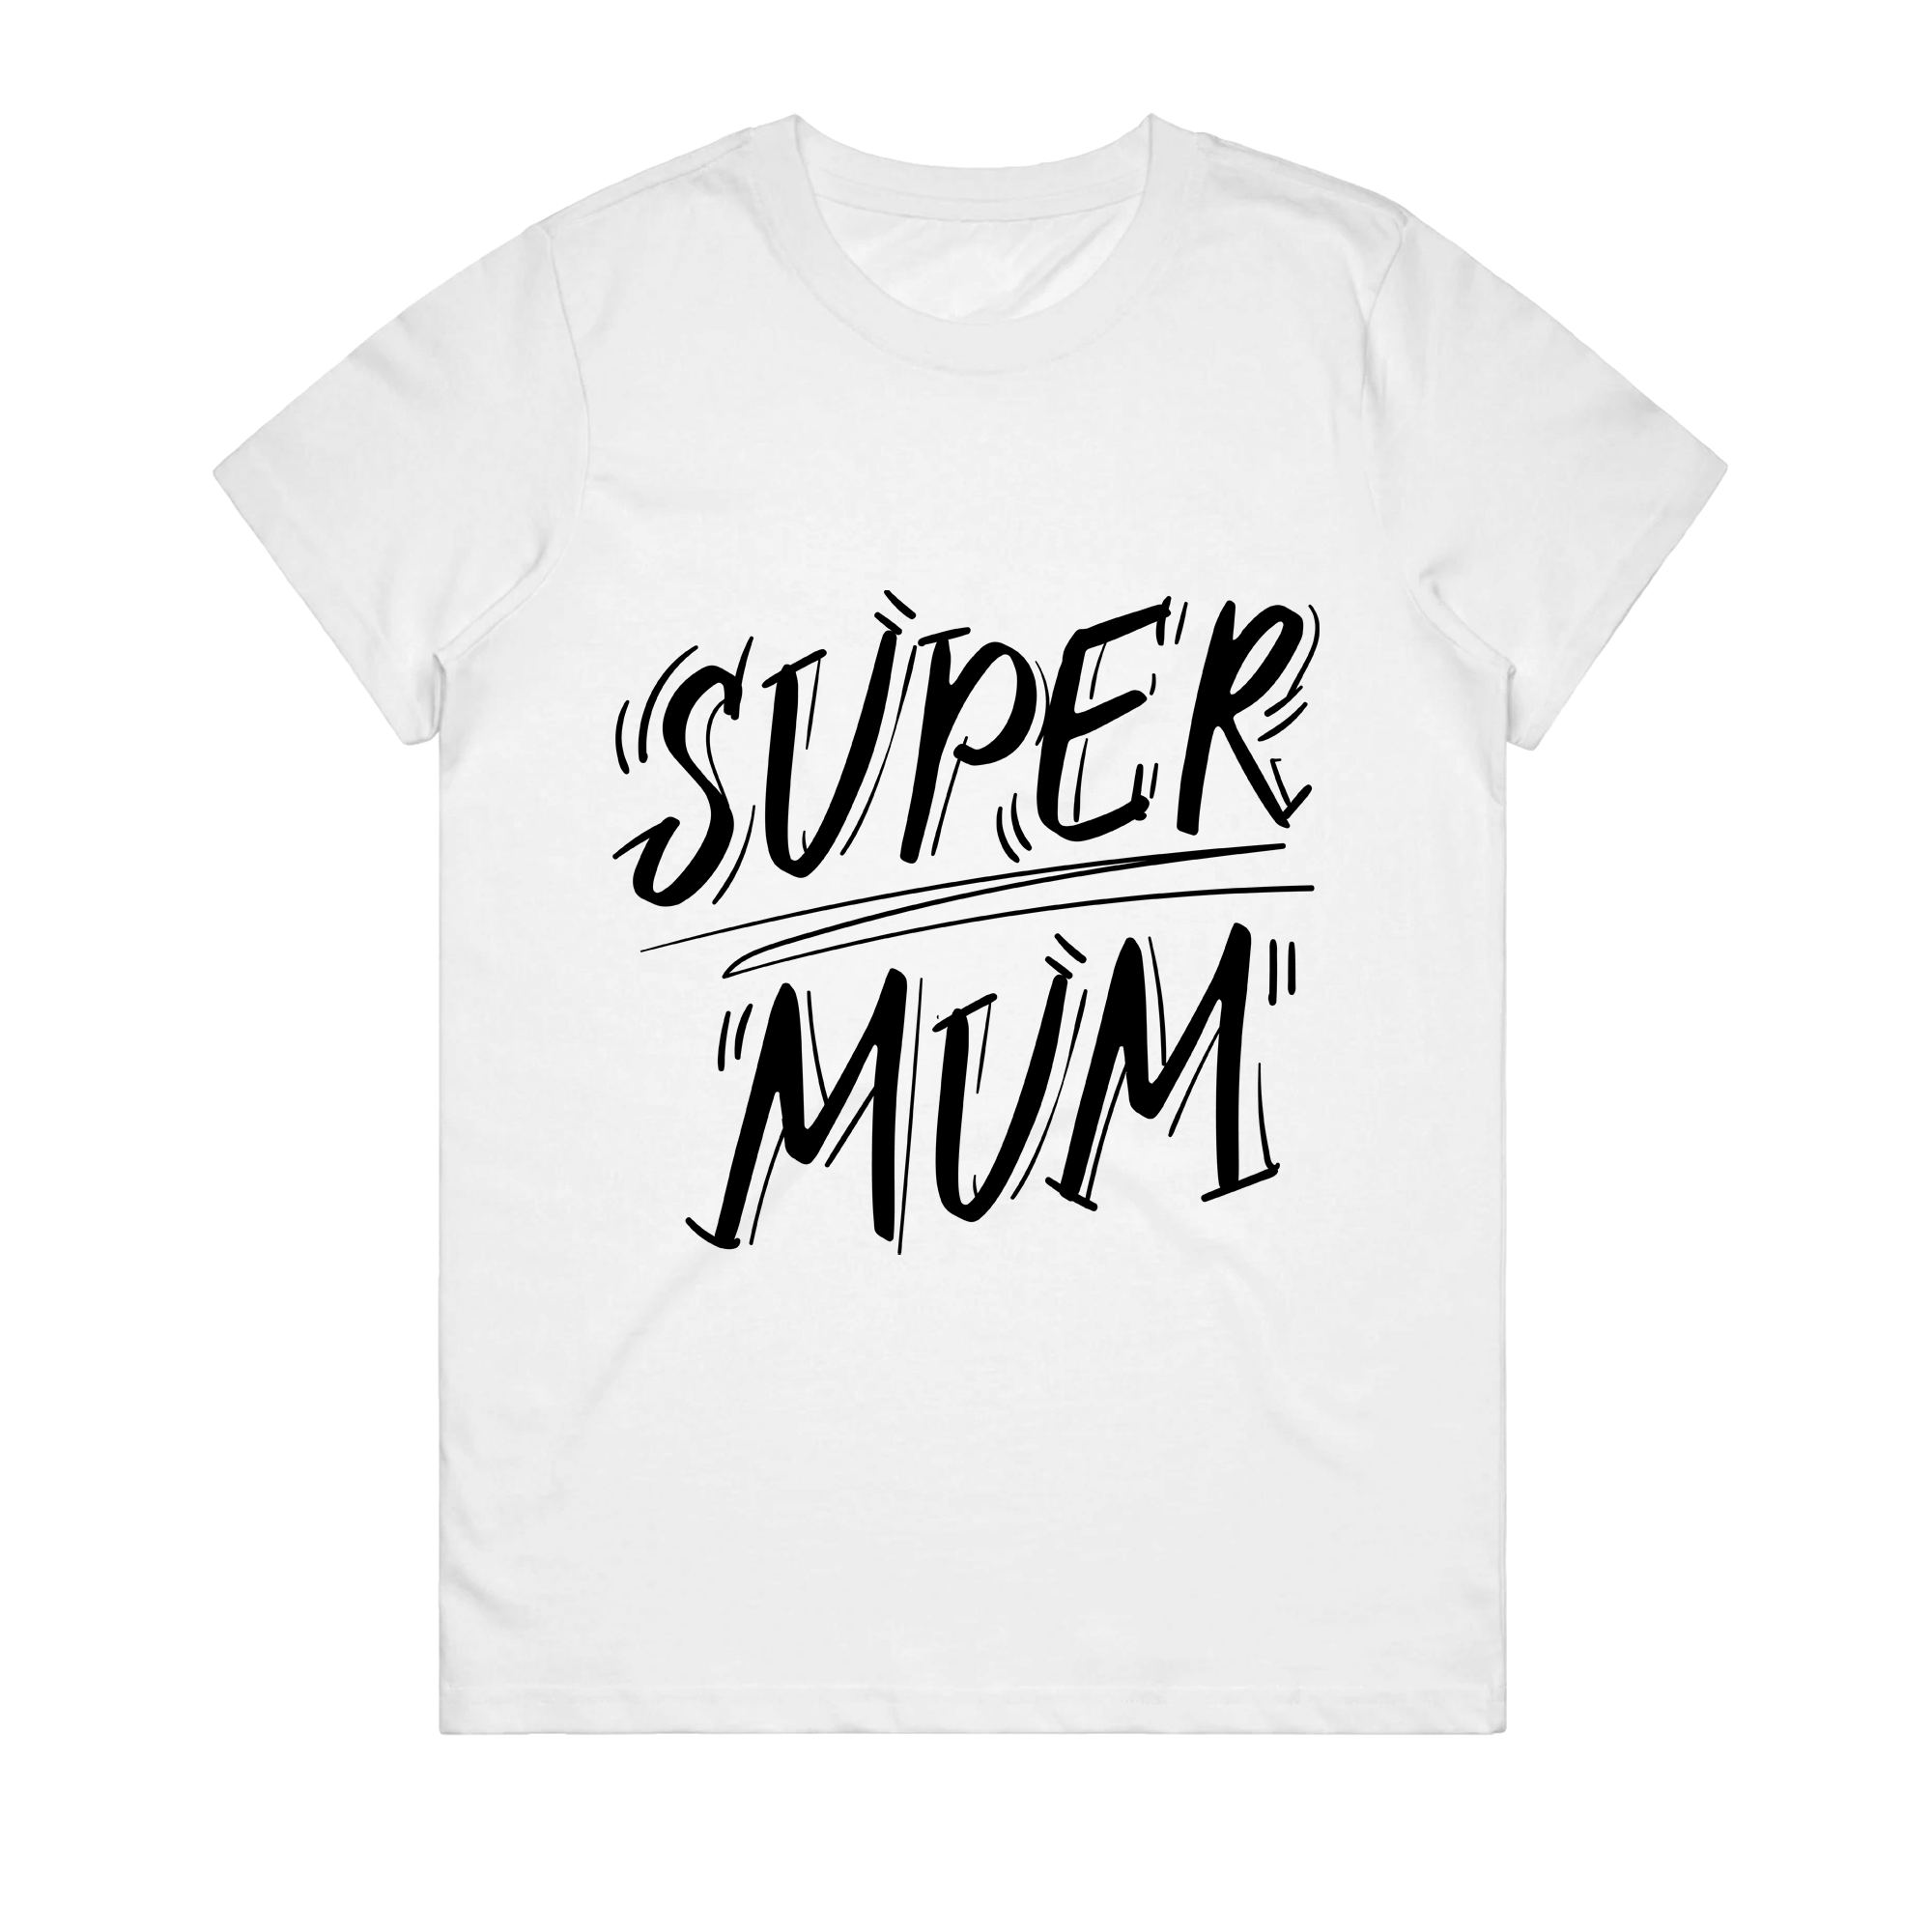 Women's T-Shirt - Super Mum 2